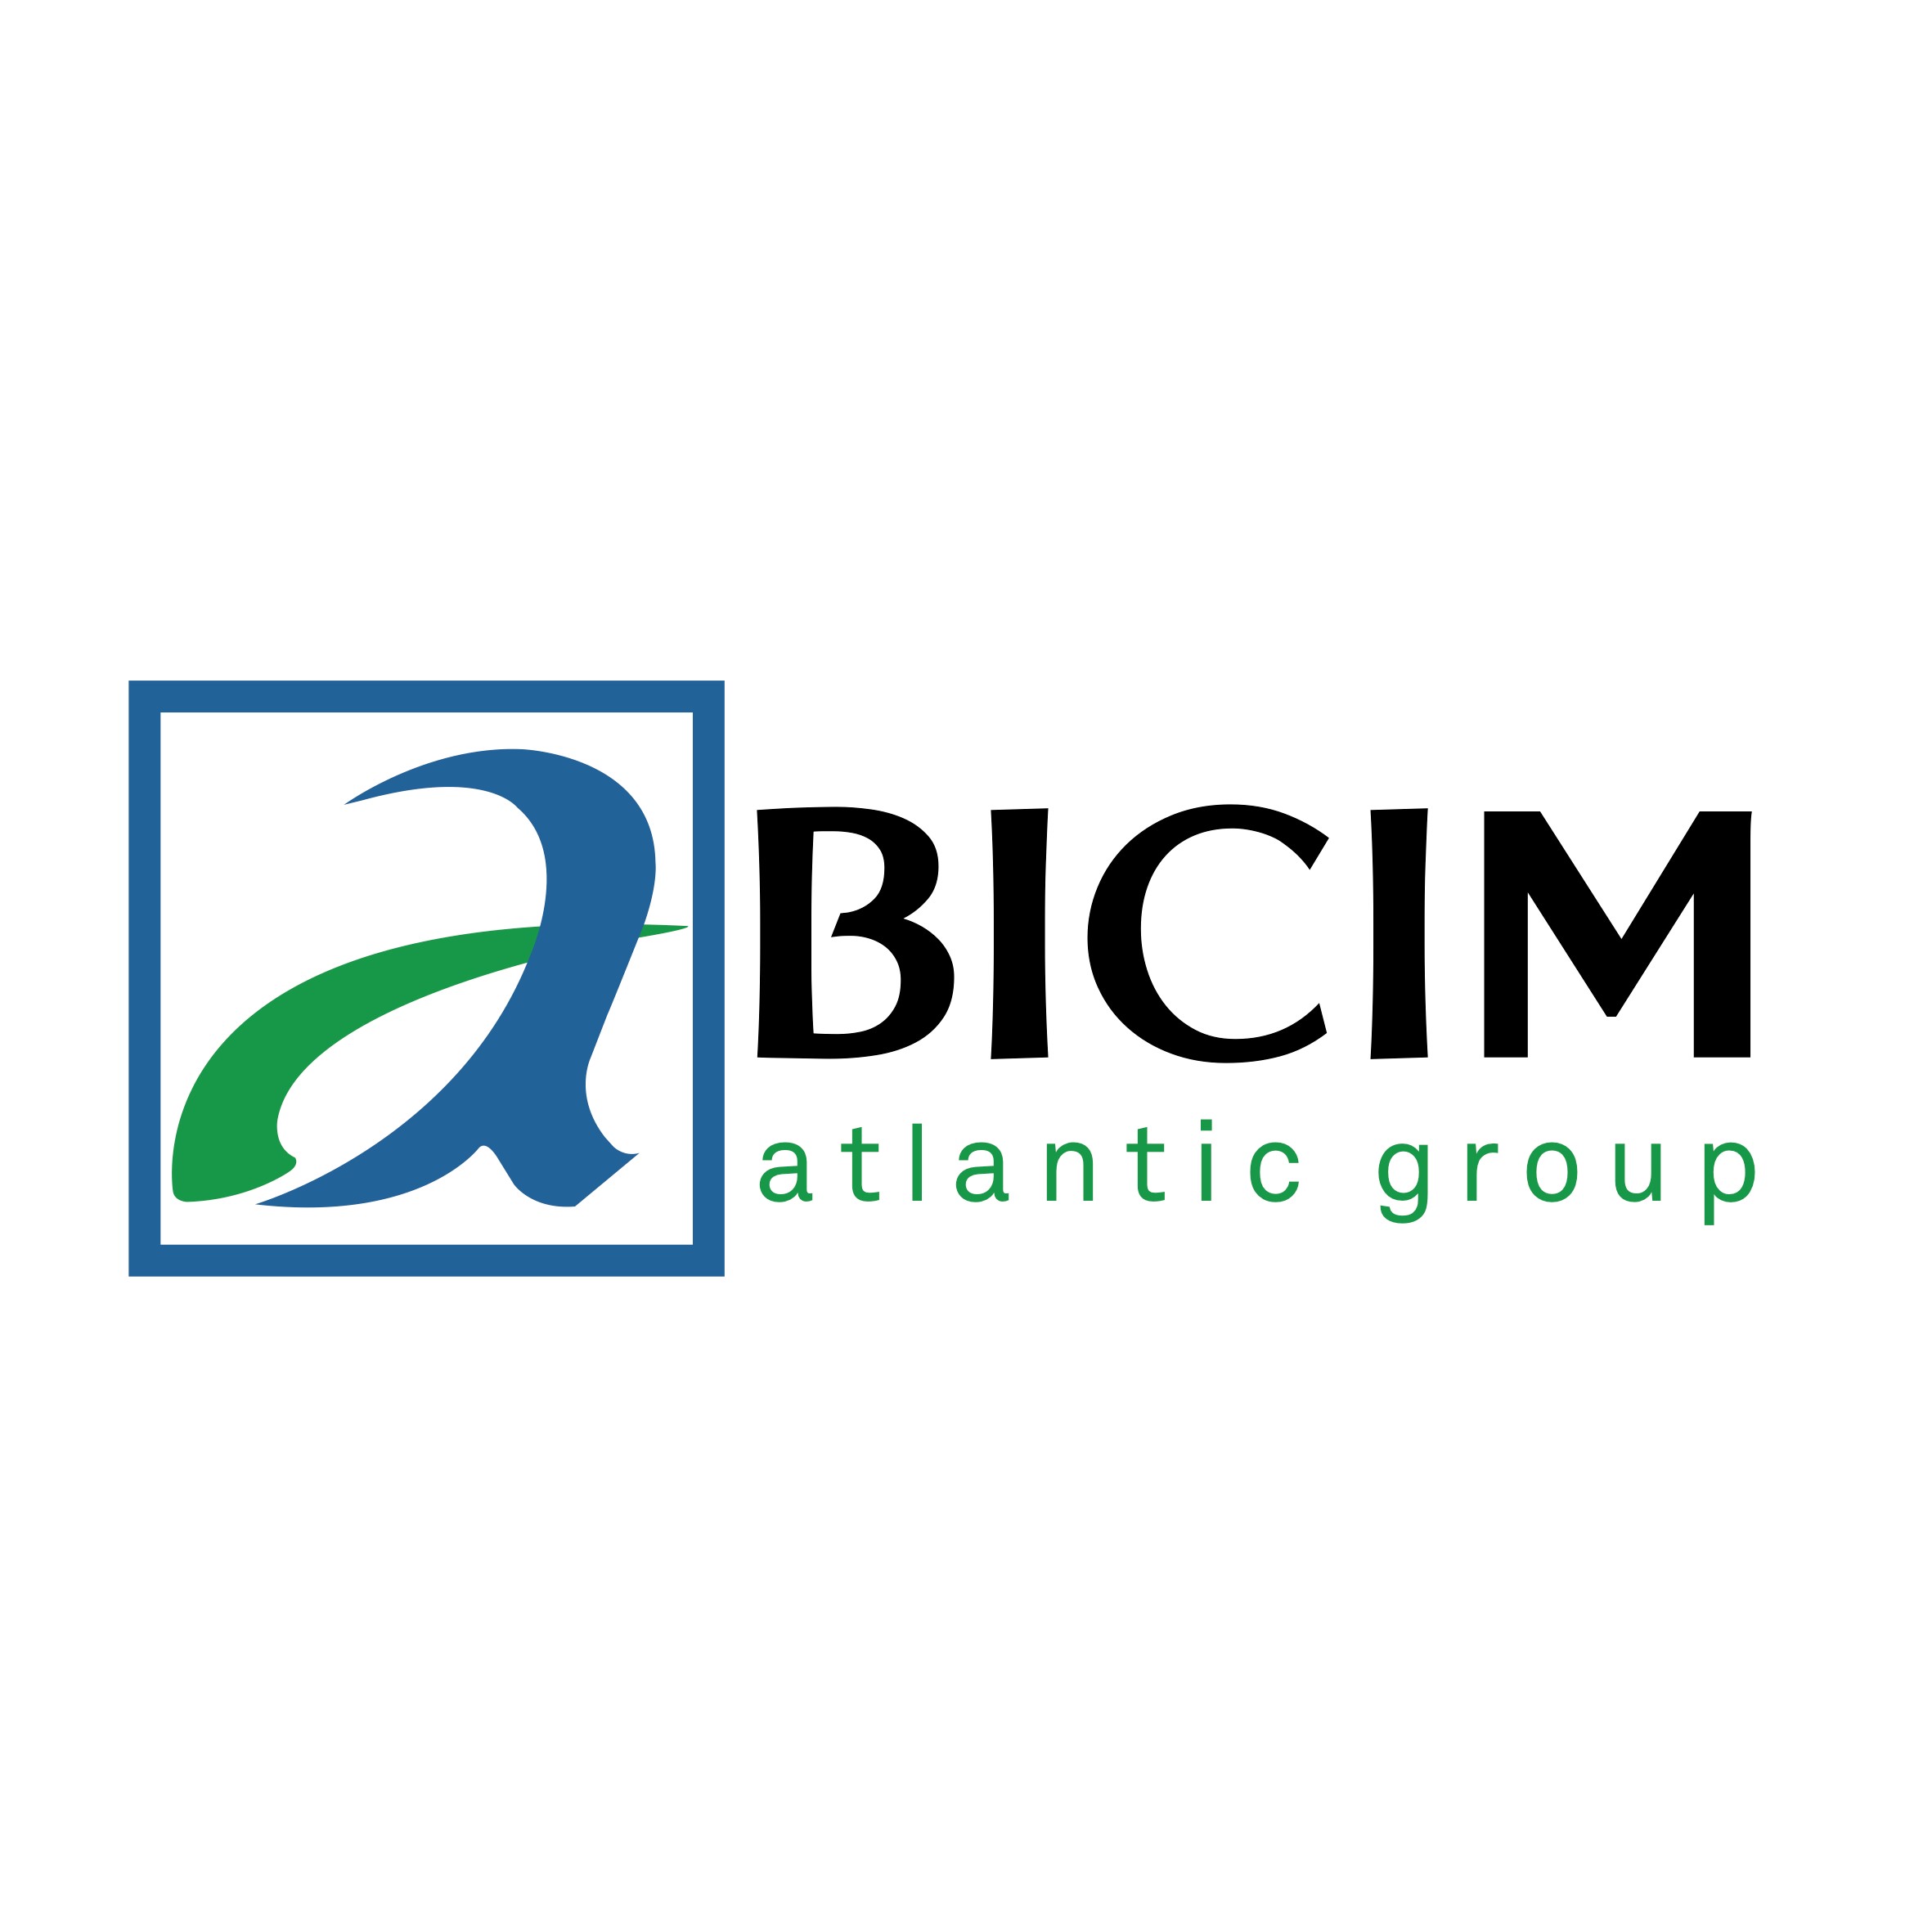 BICIM – Atlantic Group